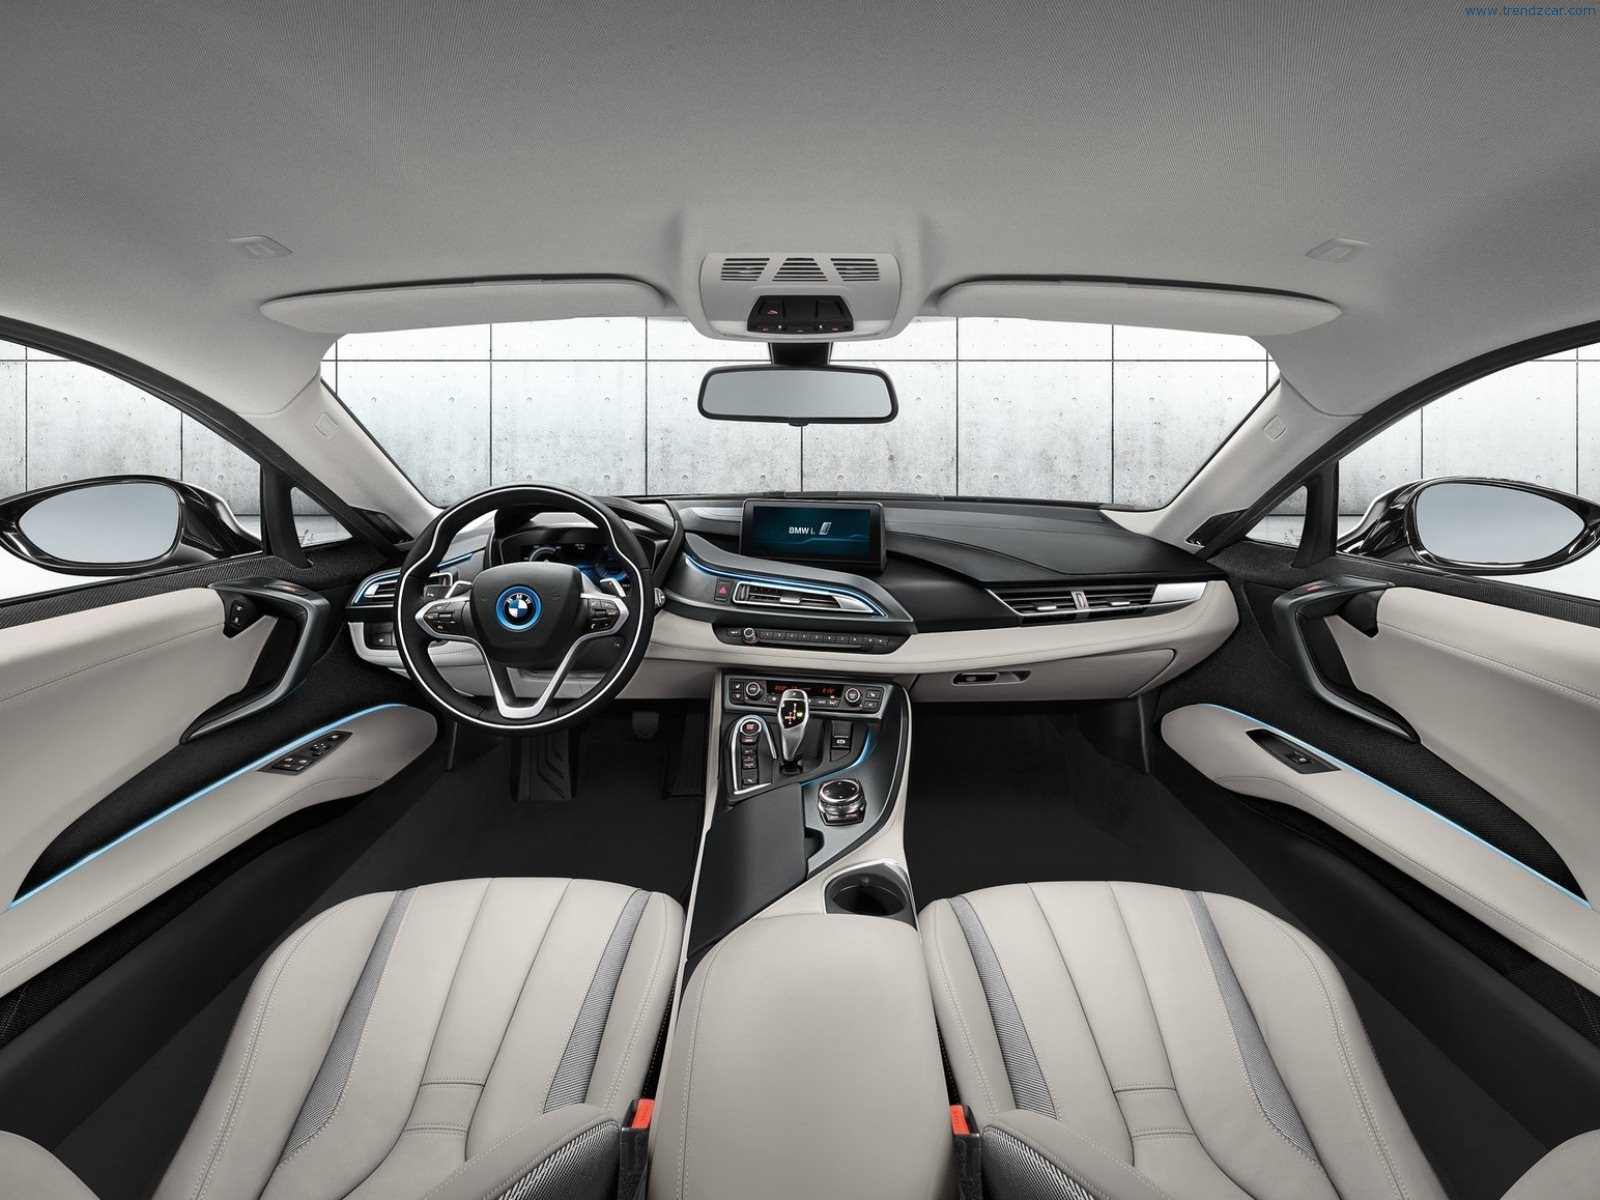 BMW i8 interior